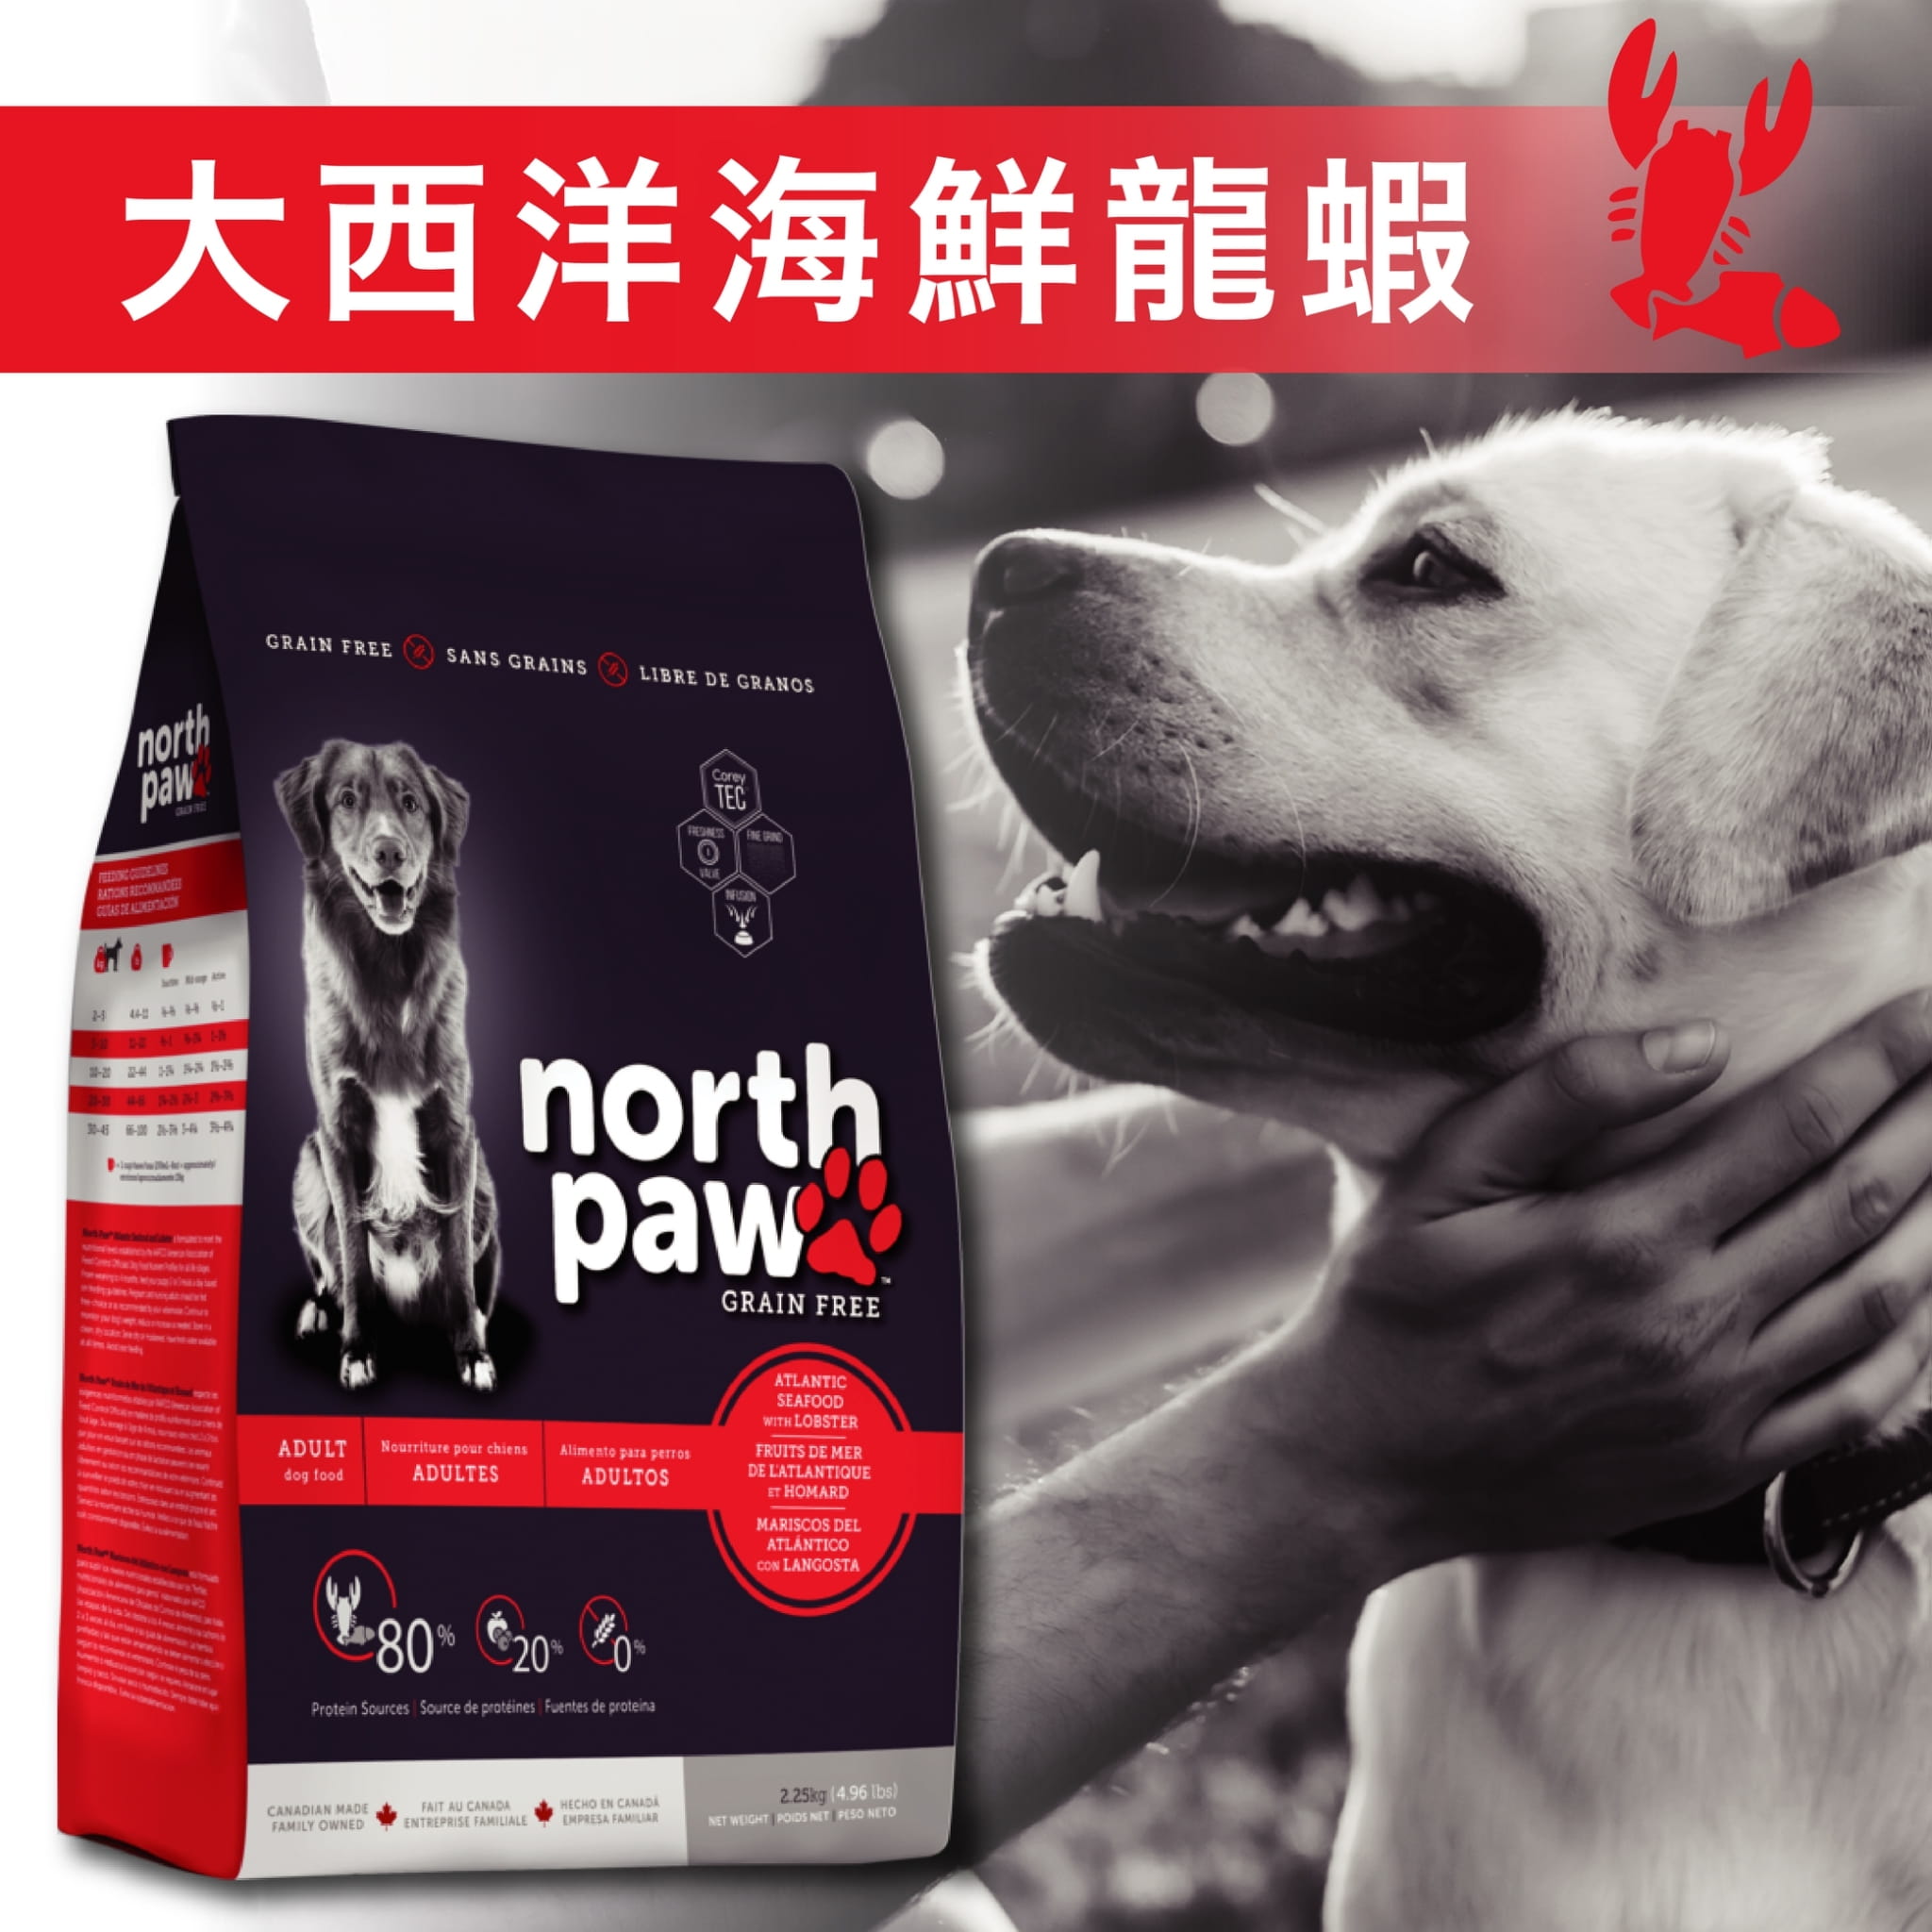 【野牧鮮食northpaw】大西洋海鮮龍蝦犬飼料1kg